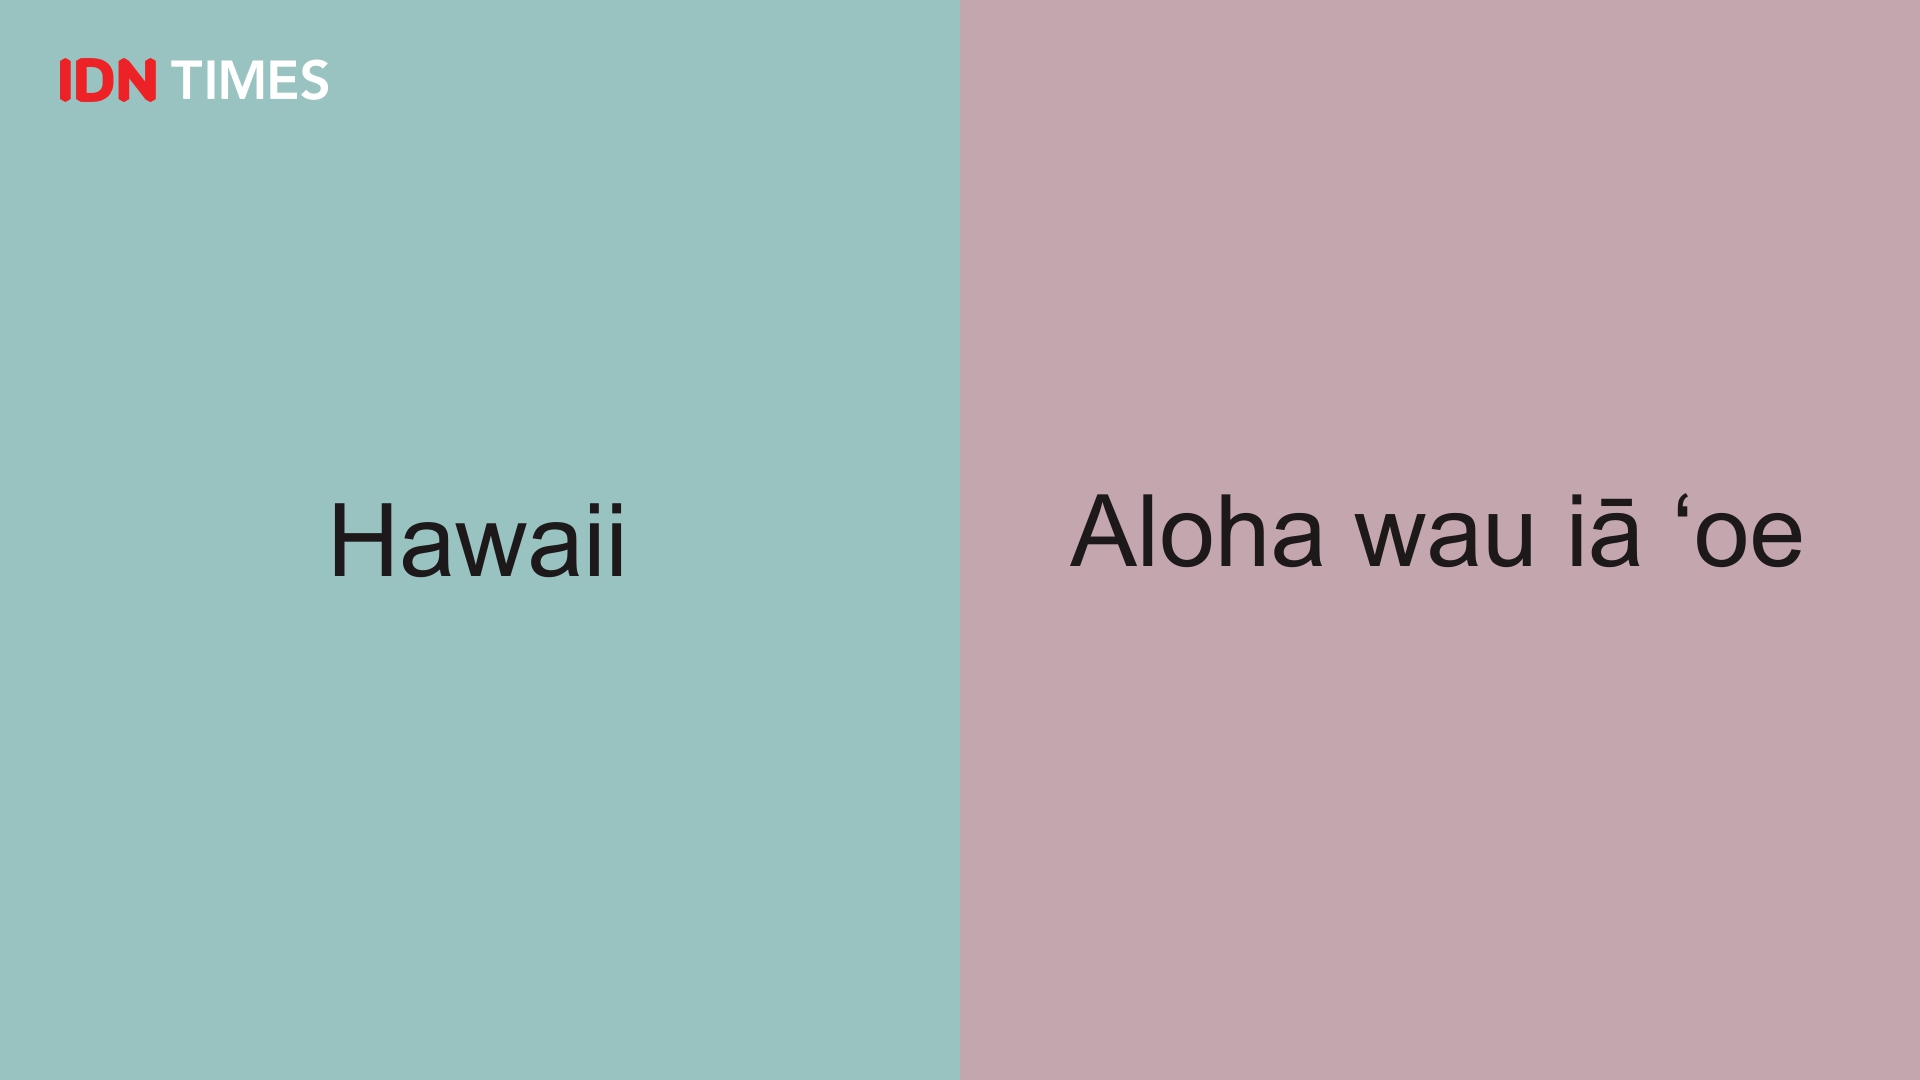 22 Hawaii = Aloha wau iÄ Ê oe